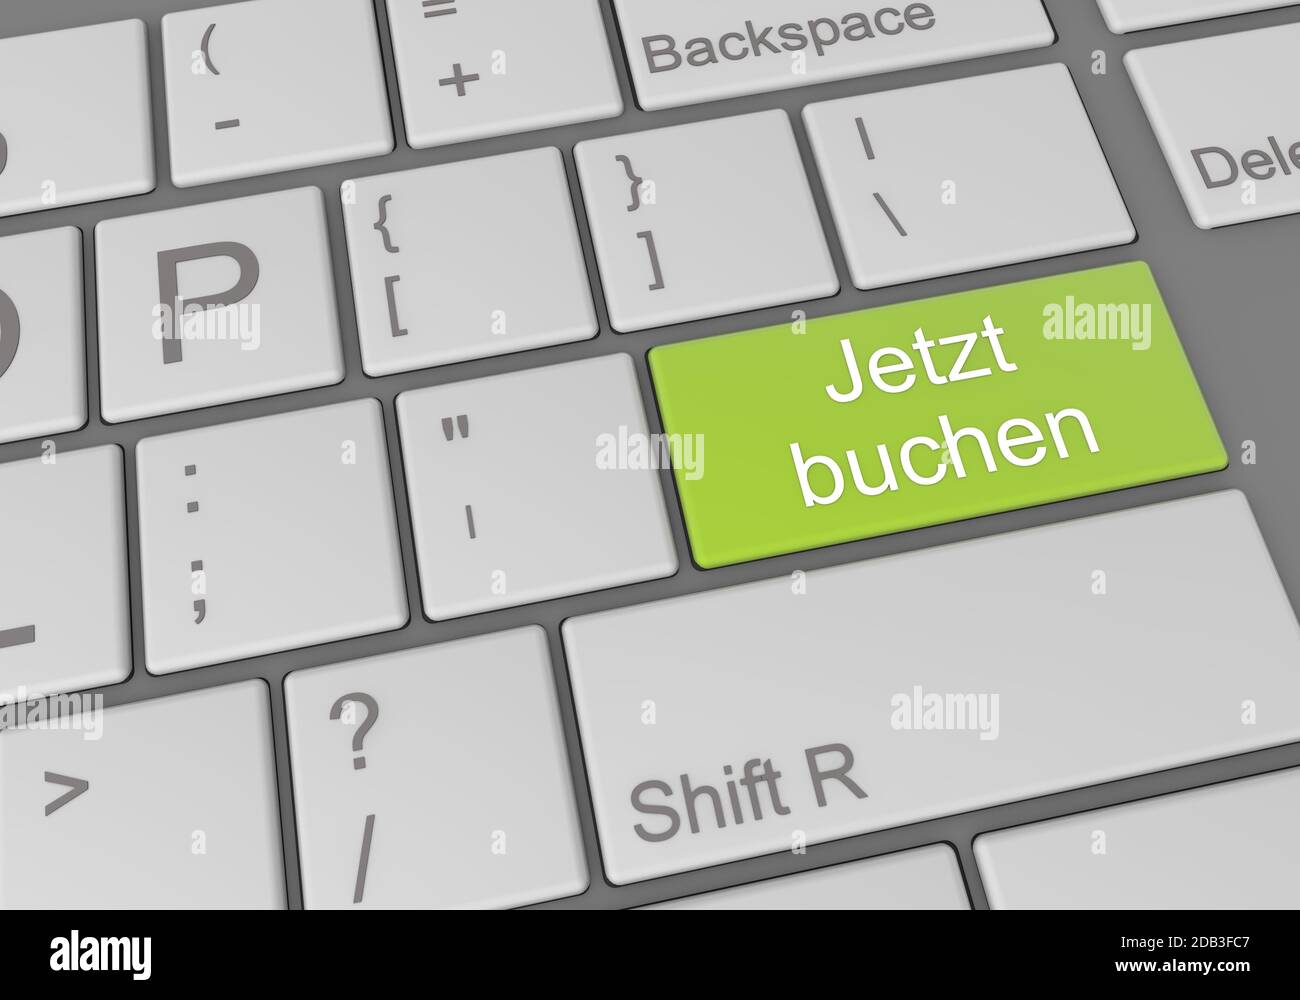 Immagine digitale della tastiera di un computer con una tastiera verde tedesco prenota ora pulsante Foto Stock